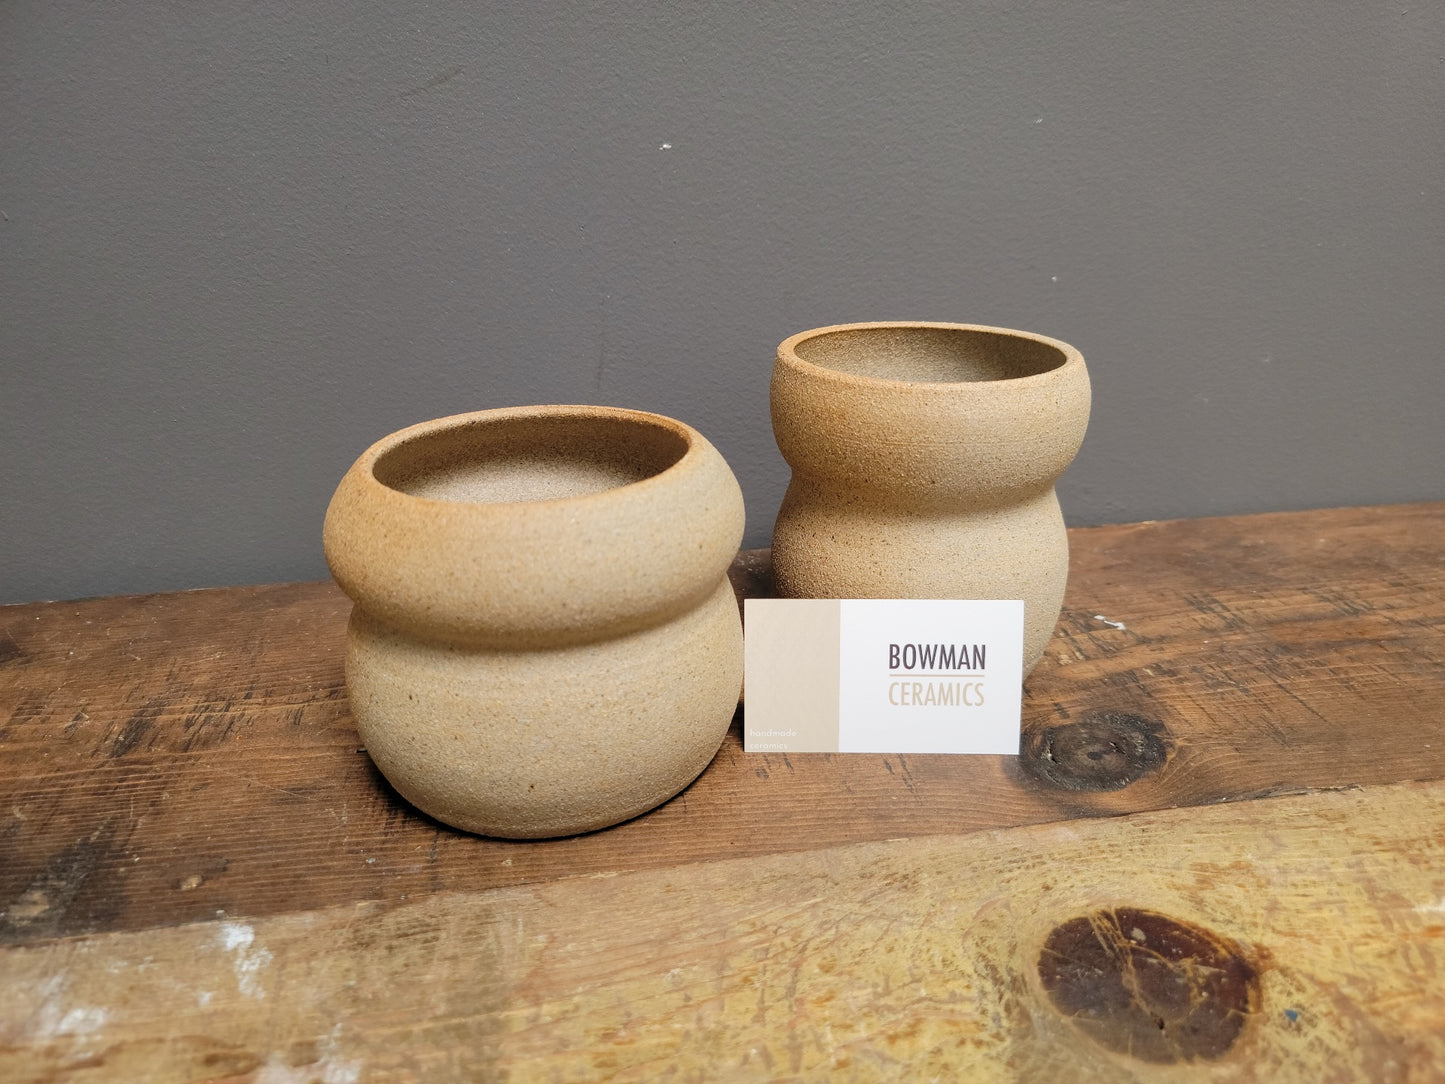 Bowman Ceramics